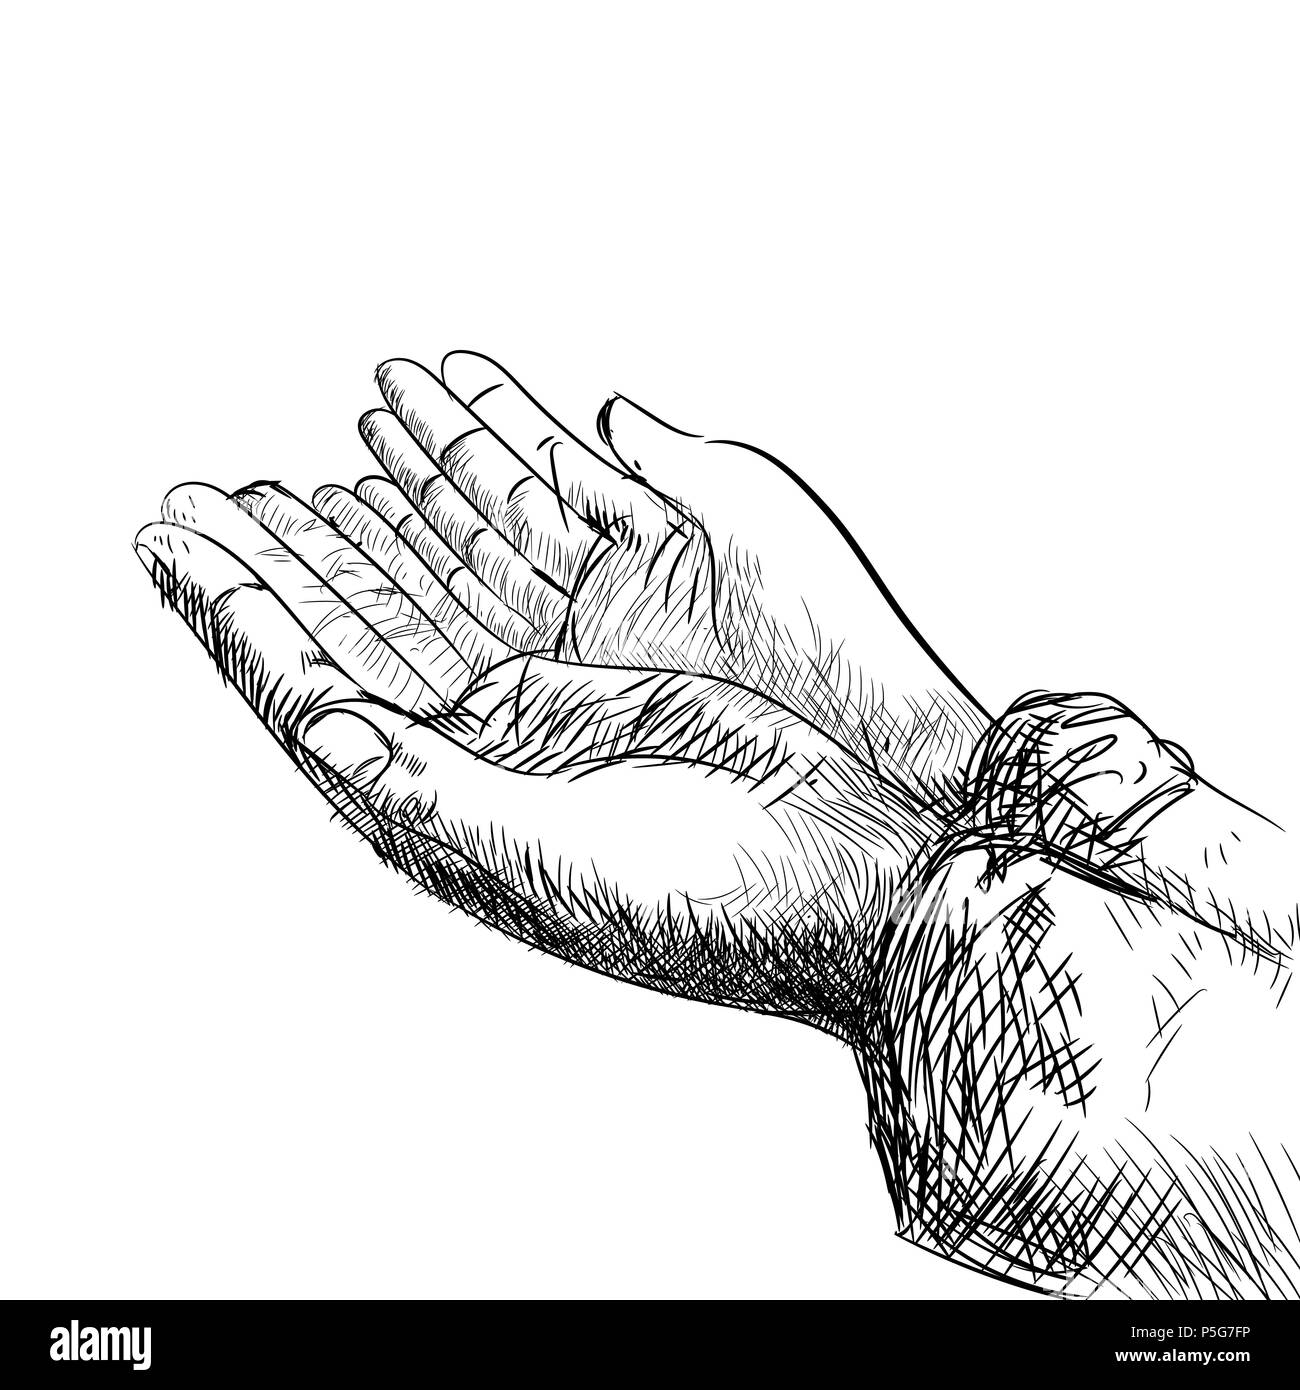 Handzeichnung muslimische Hand betend, auf weißem Hintergrund. Schwarz und Weiß eine einfache Linie Vektor Illustration für Malbuch - Linie Vektor Stock Vektor